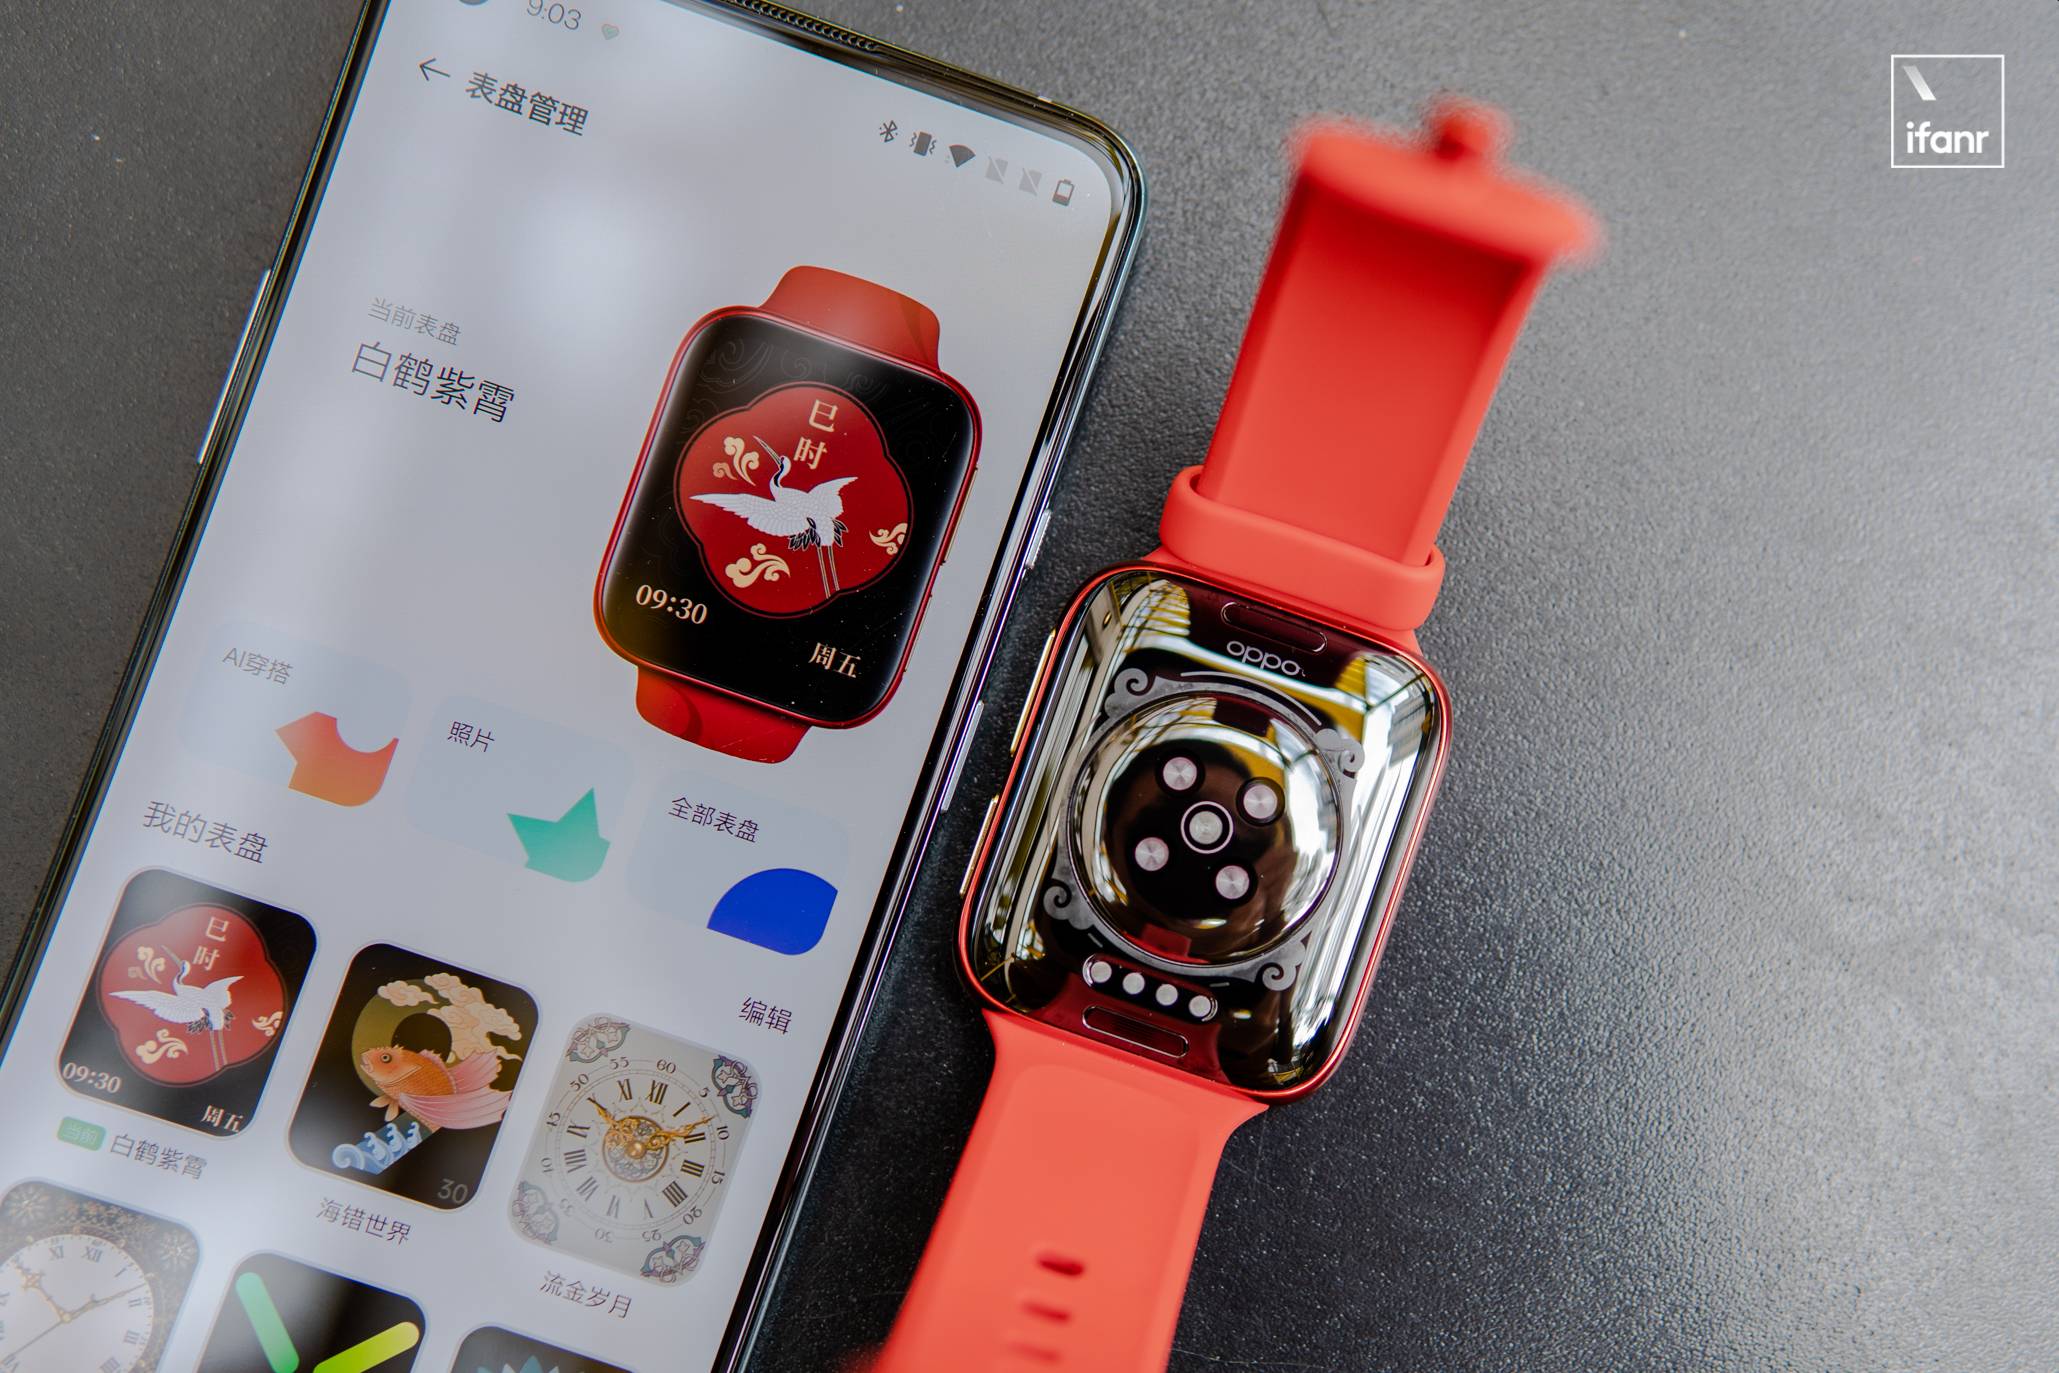 DSC04103 18 - OPPO x Forbidden City Smart Wearable Co-branded Series Picture Reward: “Red” è il leader, “Gold” è pieno di giada